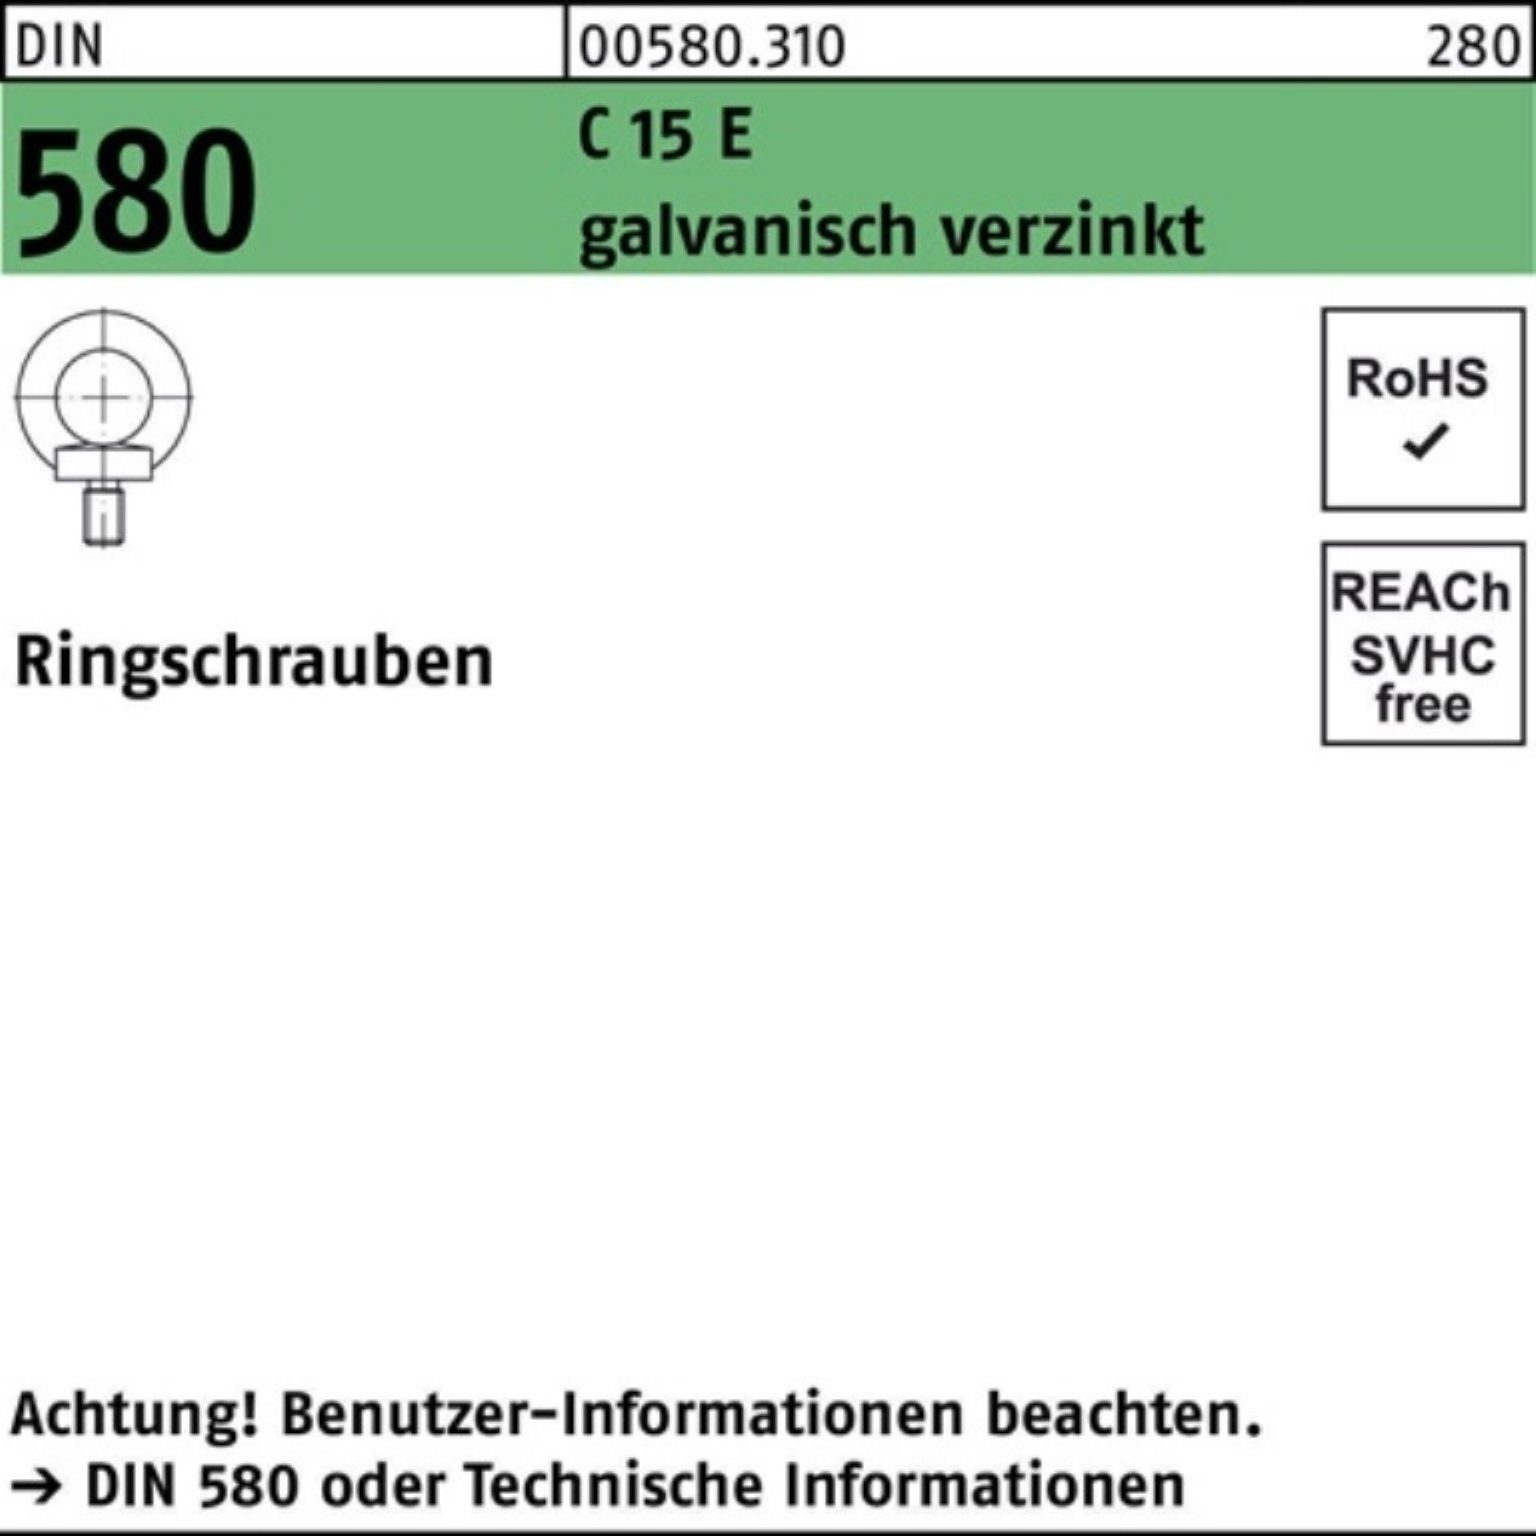 Reyher Schraube 100er Pack Ringschraube 15 E Stück C DIN 580 galv.verz. 58 M14 DIN 10